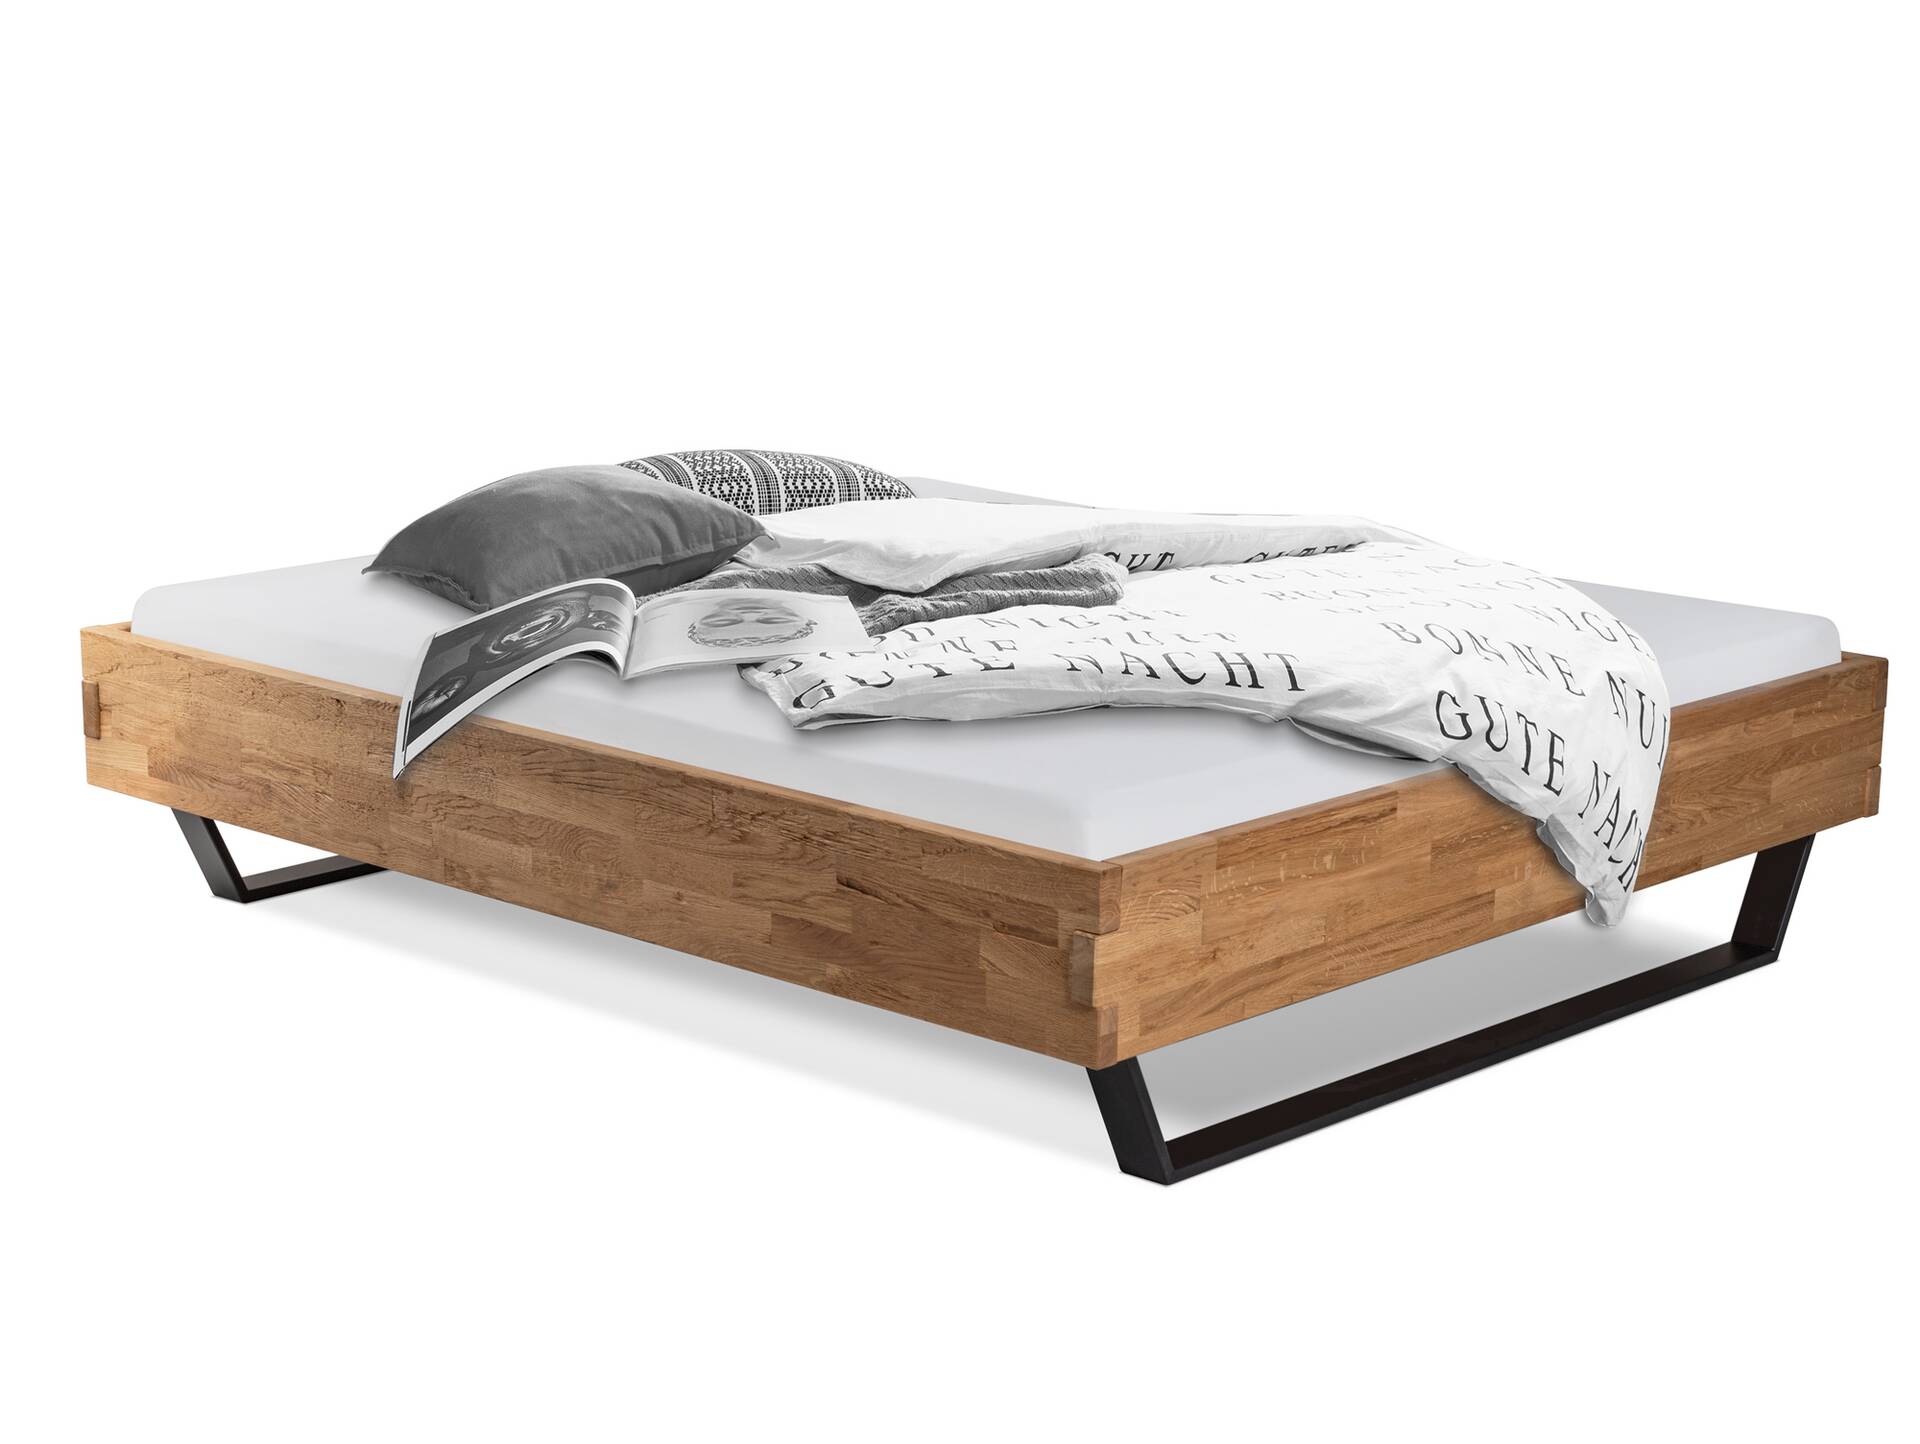 CORDINO Kufenbett aus Eiche, Material Massivholz, mit/ohne Kopfteil 90 x 200 cm | Eiche unbehandelt | gehackt | ohne Kopfteil